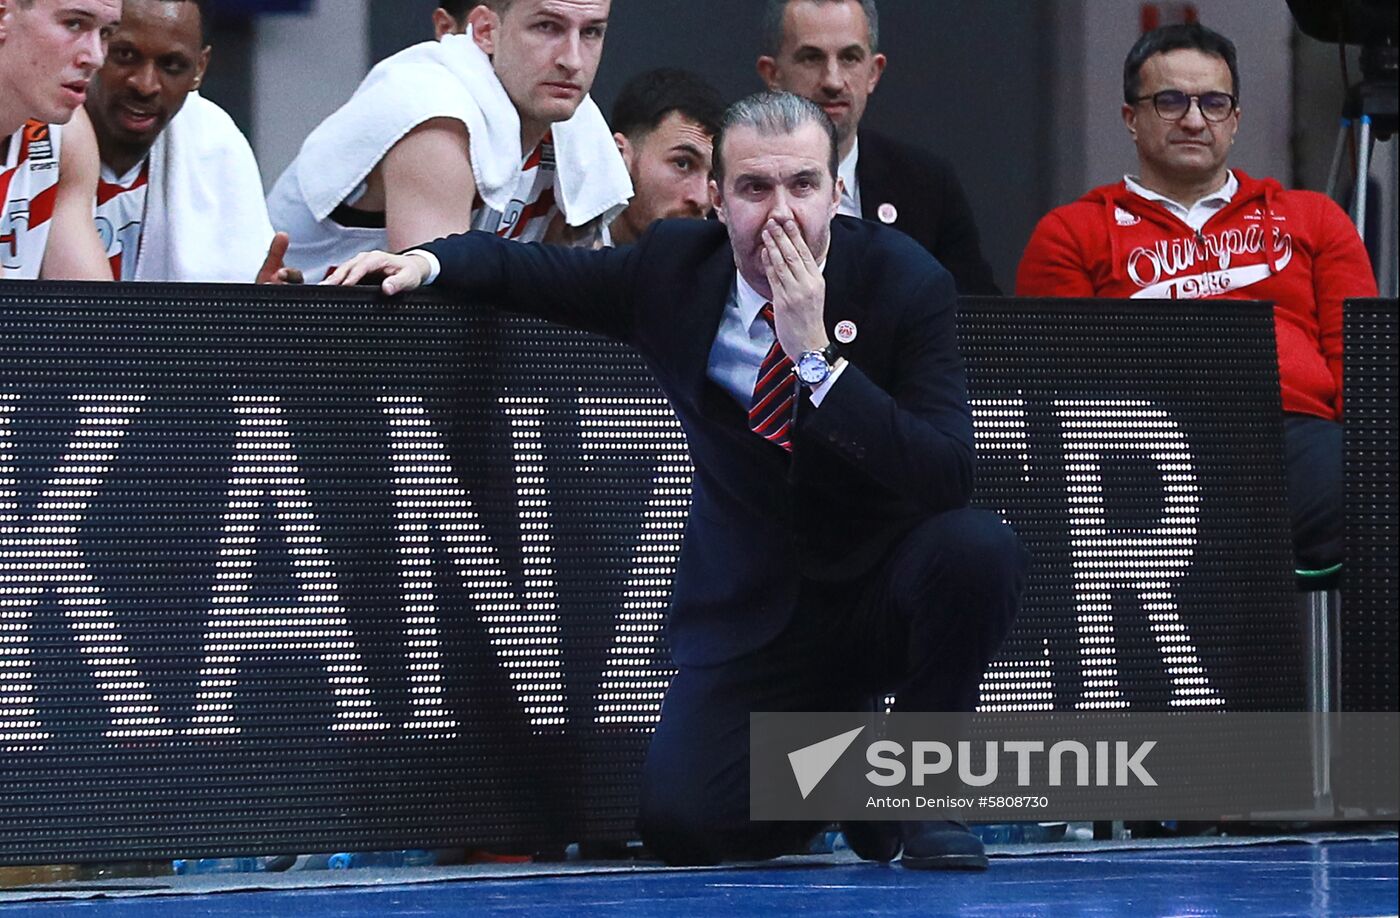 Russia Basketball Euroleague CSKA - Olimpia 